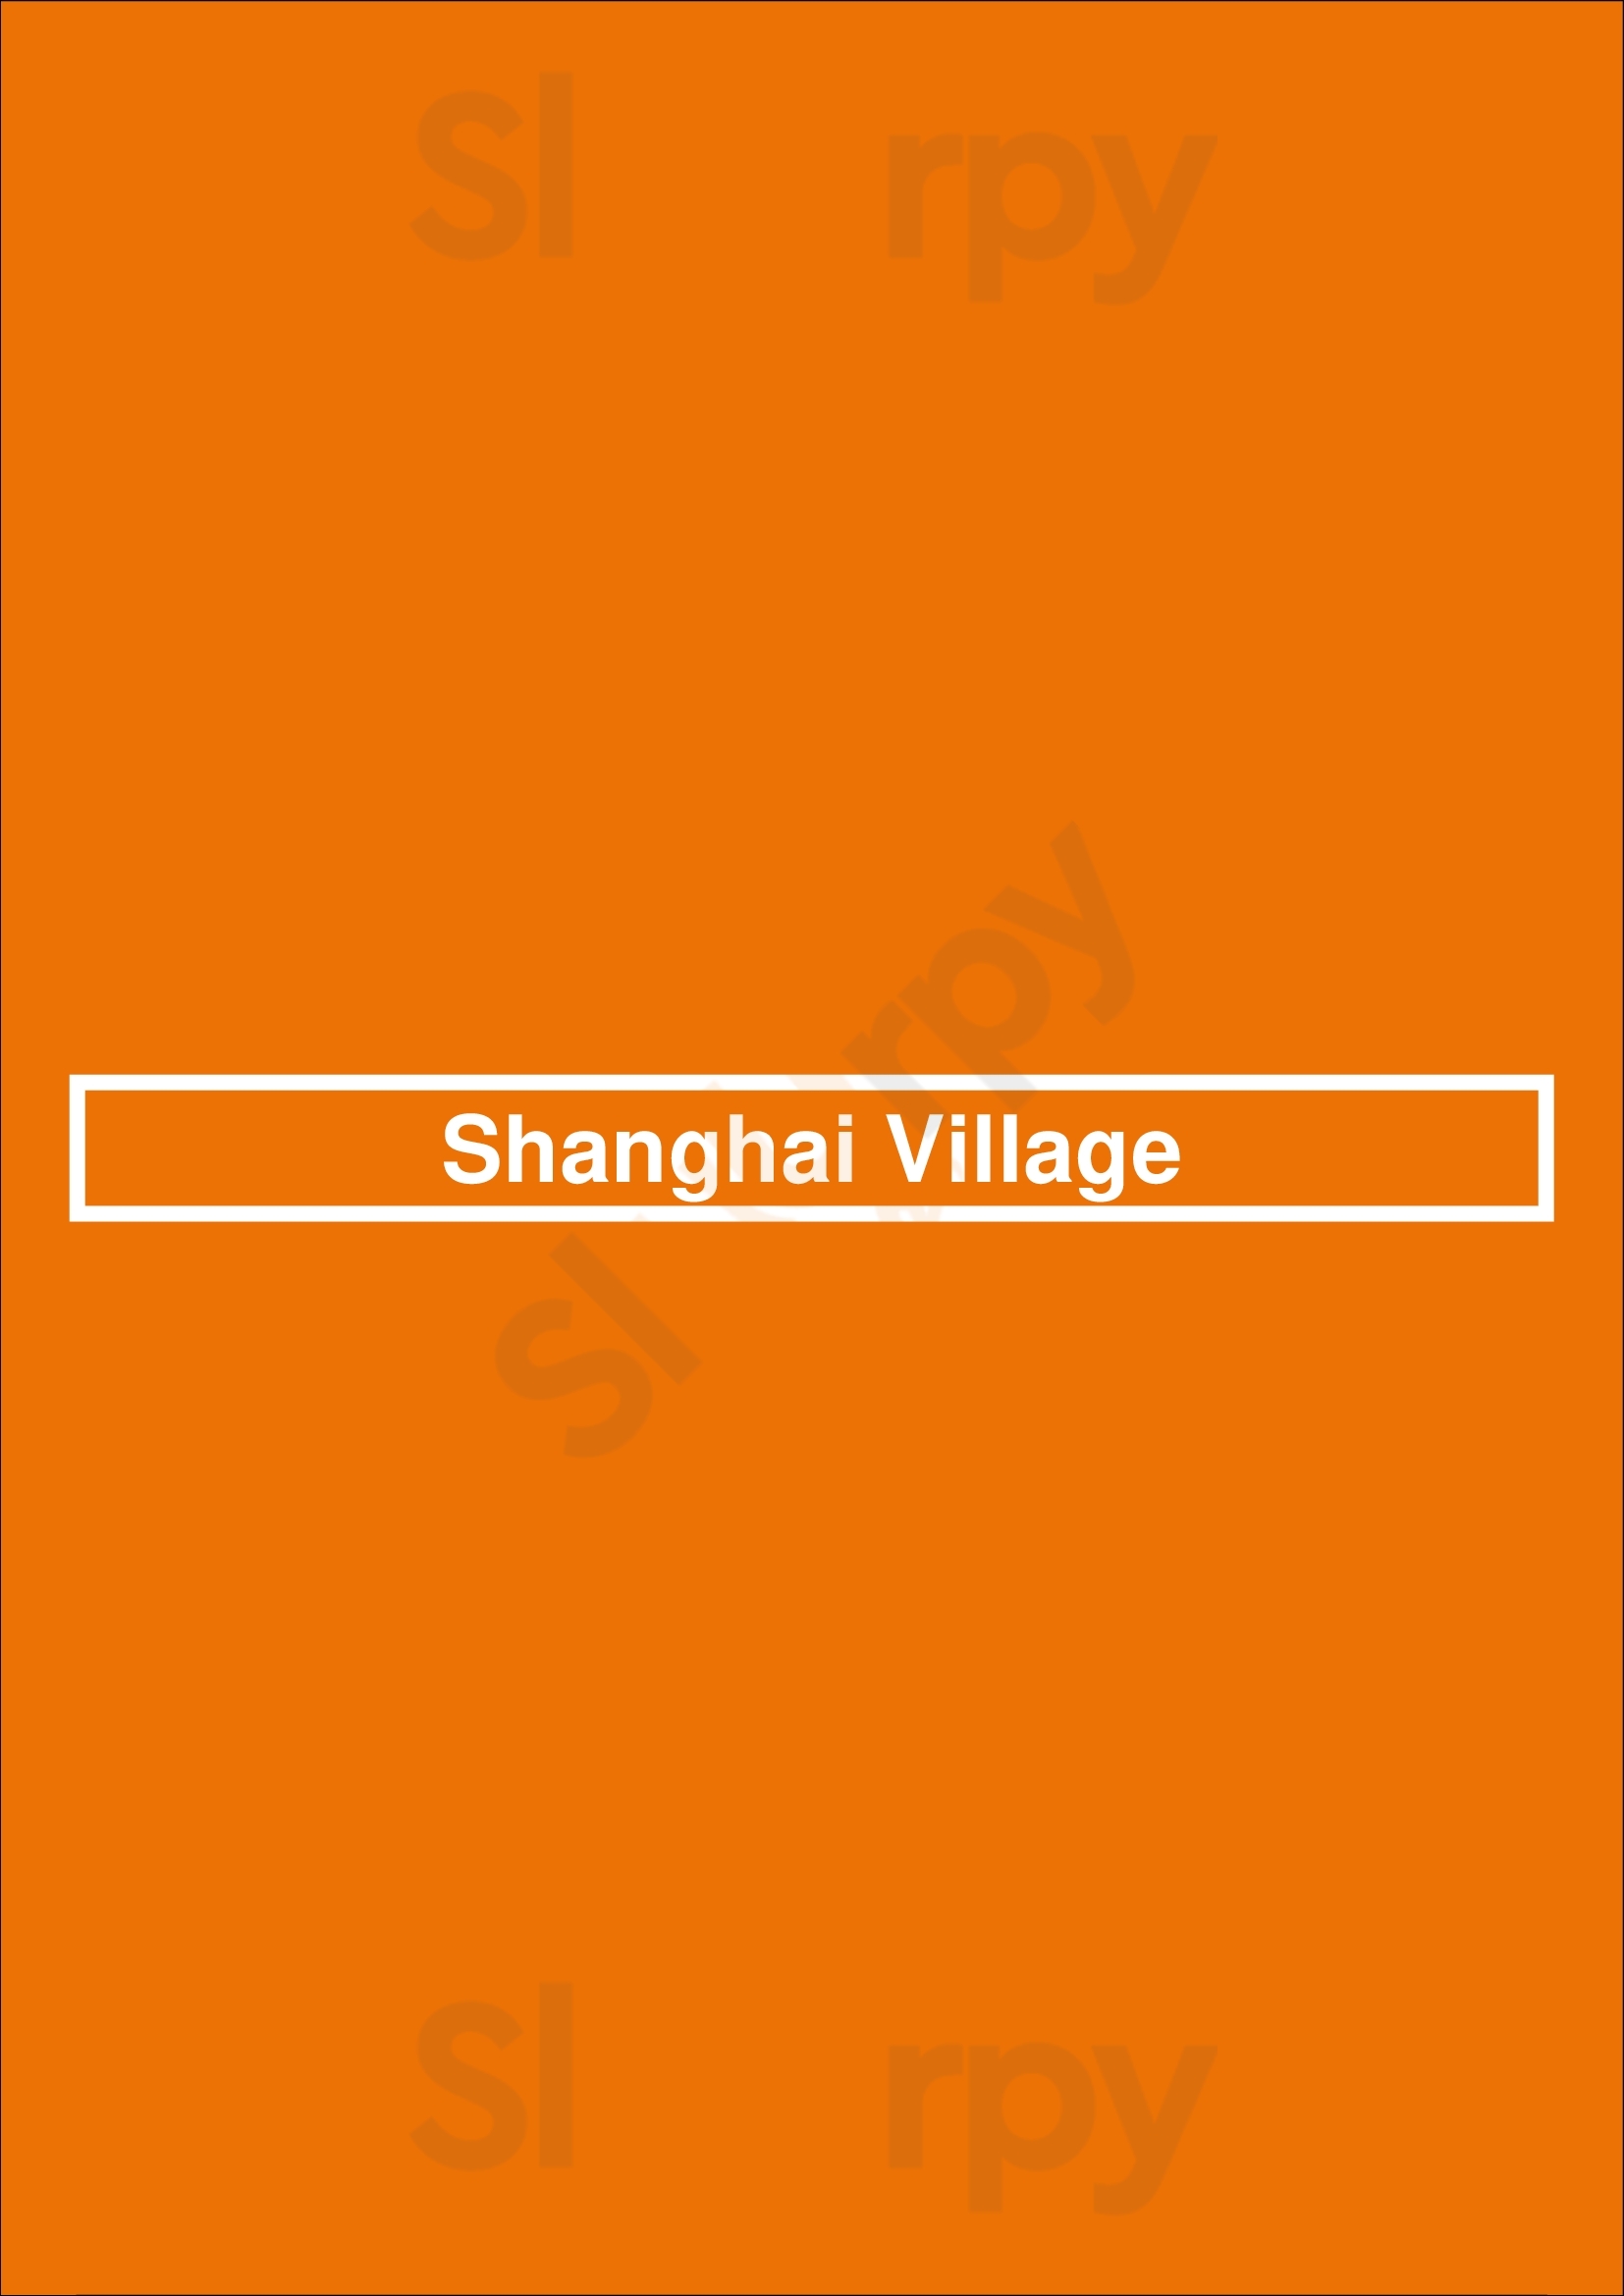 Shanghai Village Billings Menu - 1